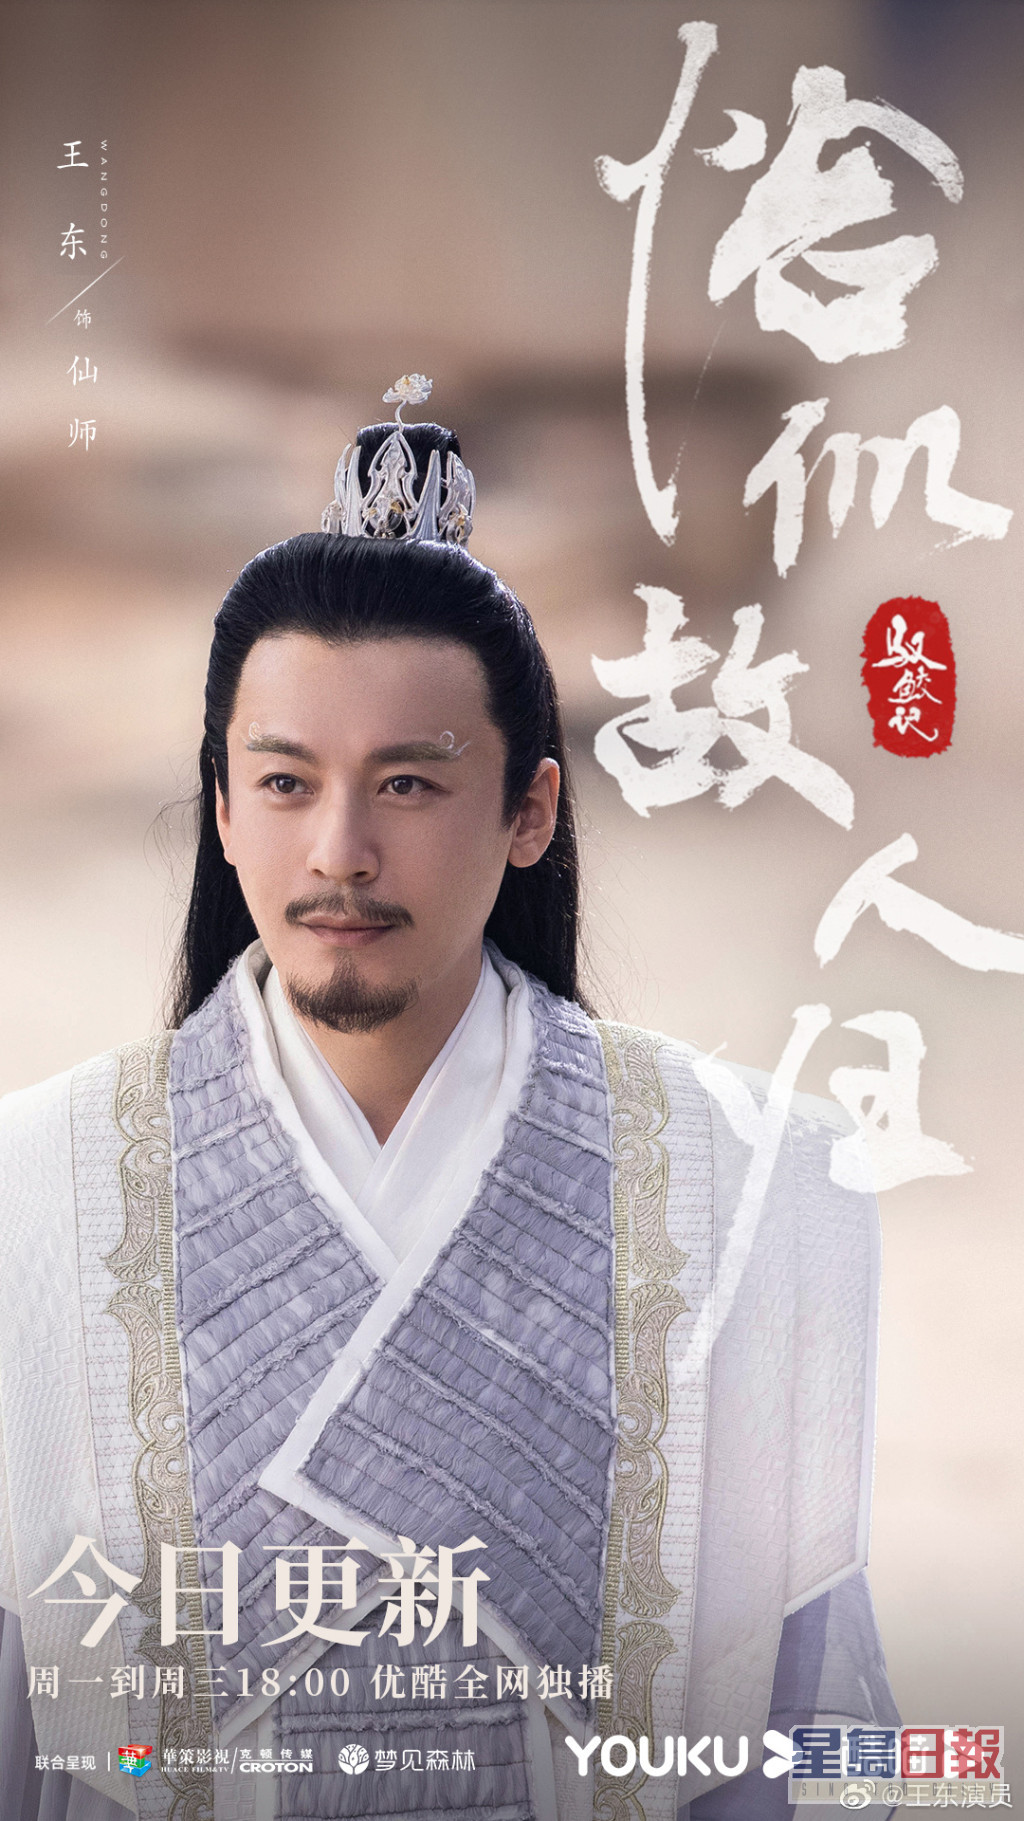 王东于剧中饰演「仙师」一角，令他知名度提升。